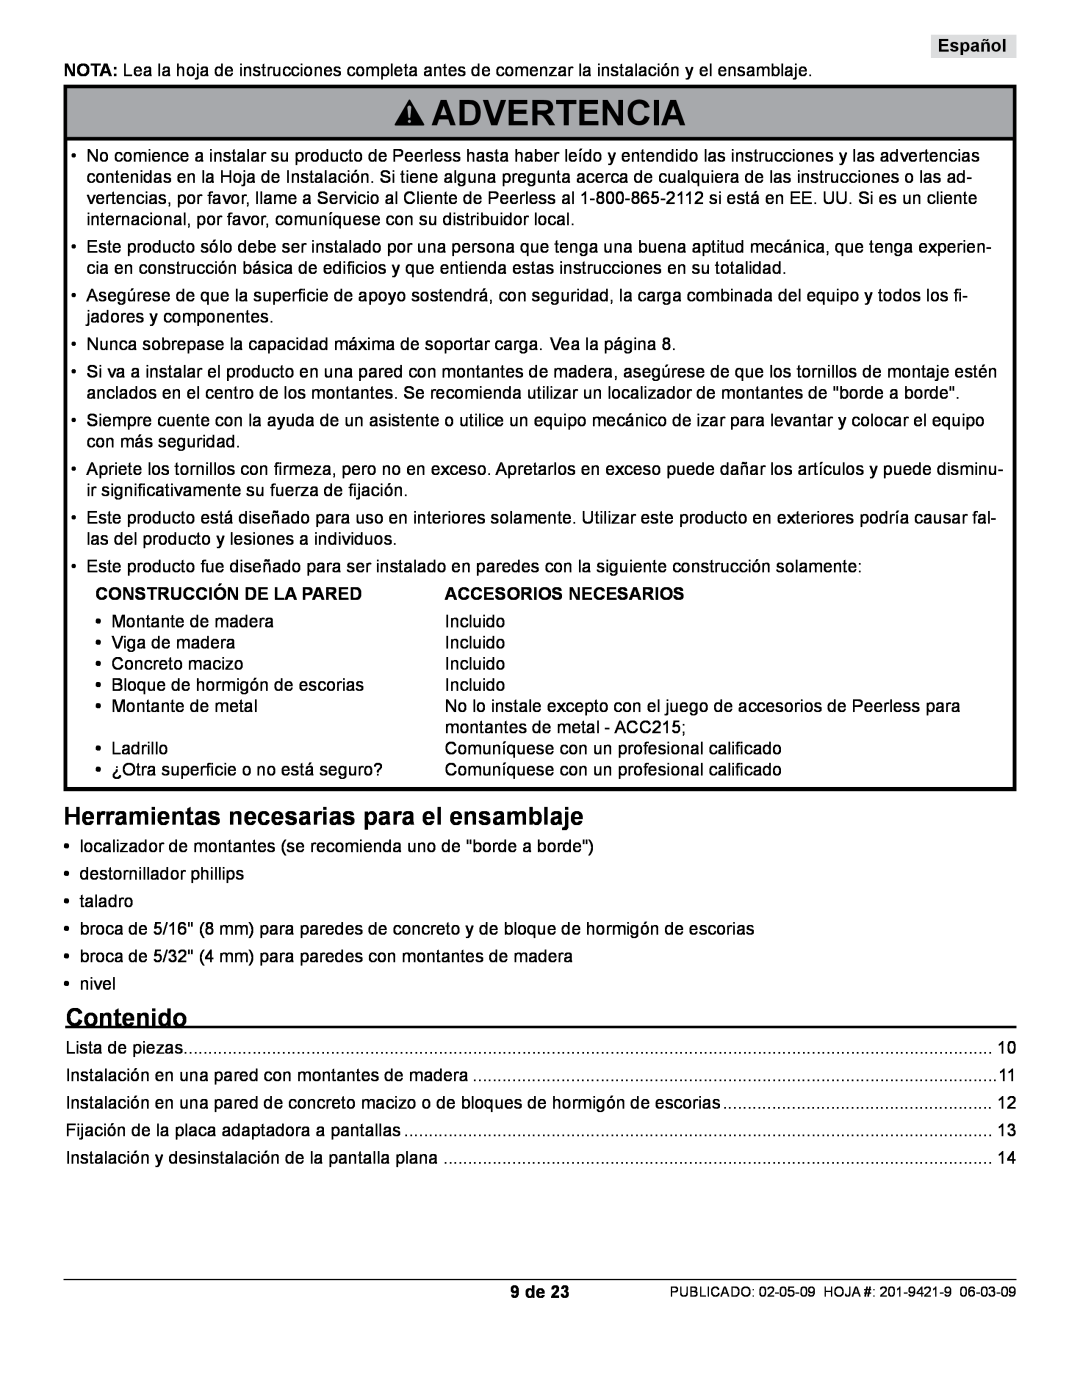 Peerless Industries ST630P-S manual Advertencia, Herramientas necesarias para el ensamblaje, Contenido, Español, 9 de 